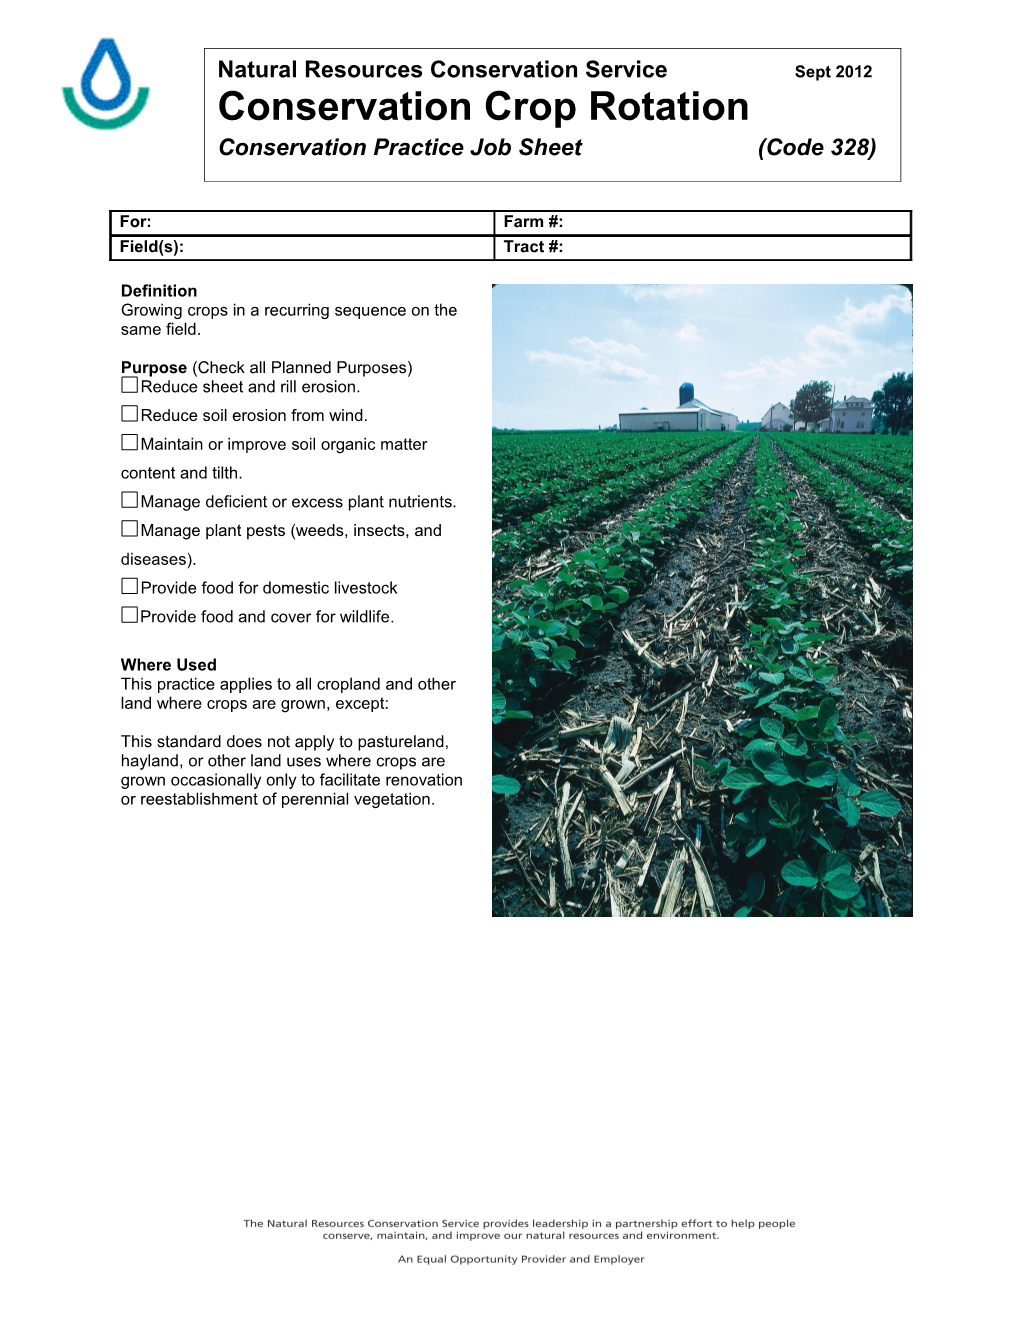 Conservation Crop Rotation 328 Job Sheet